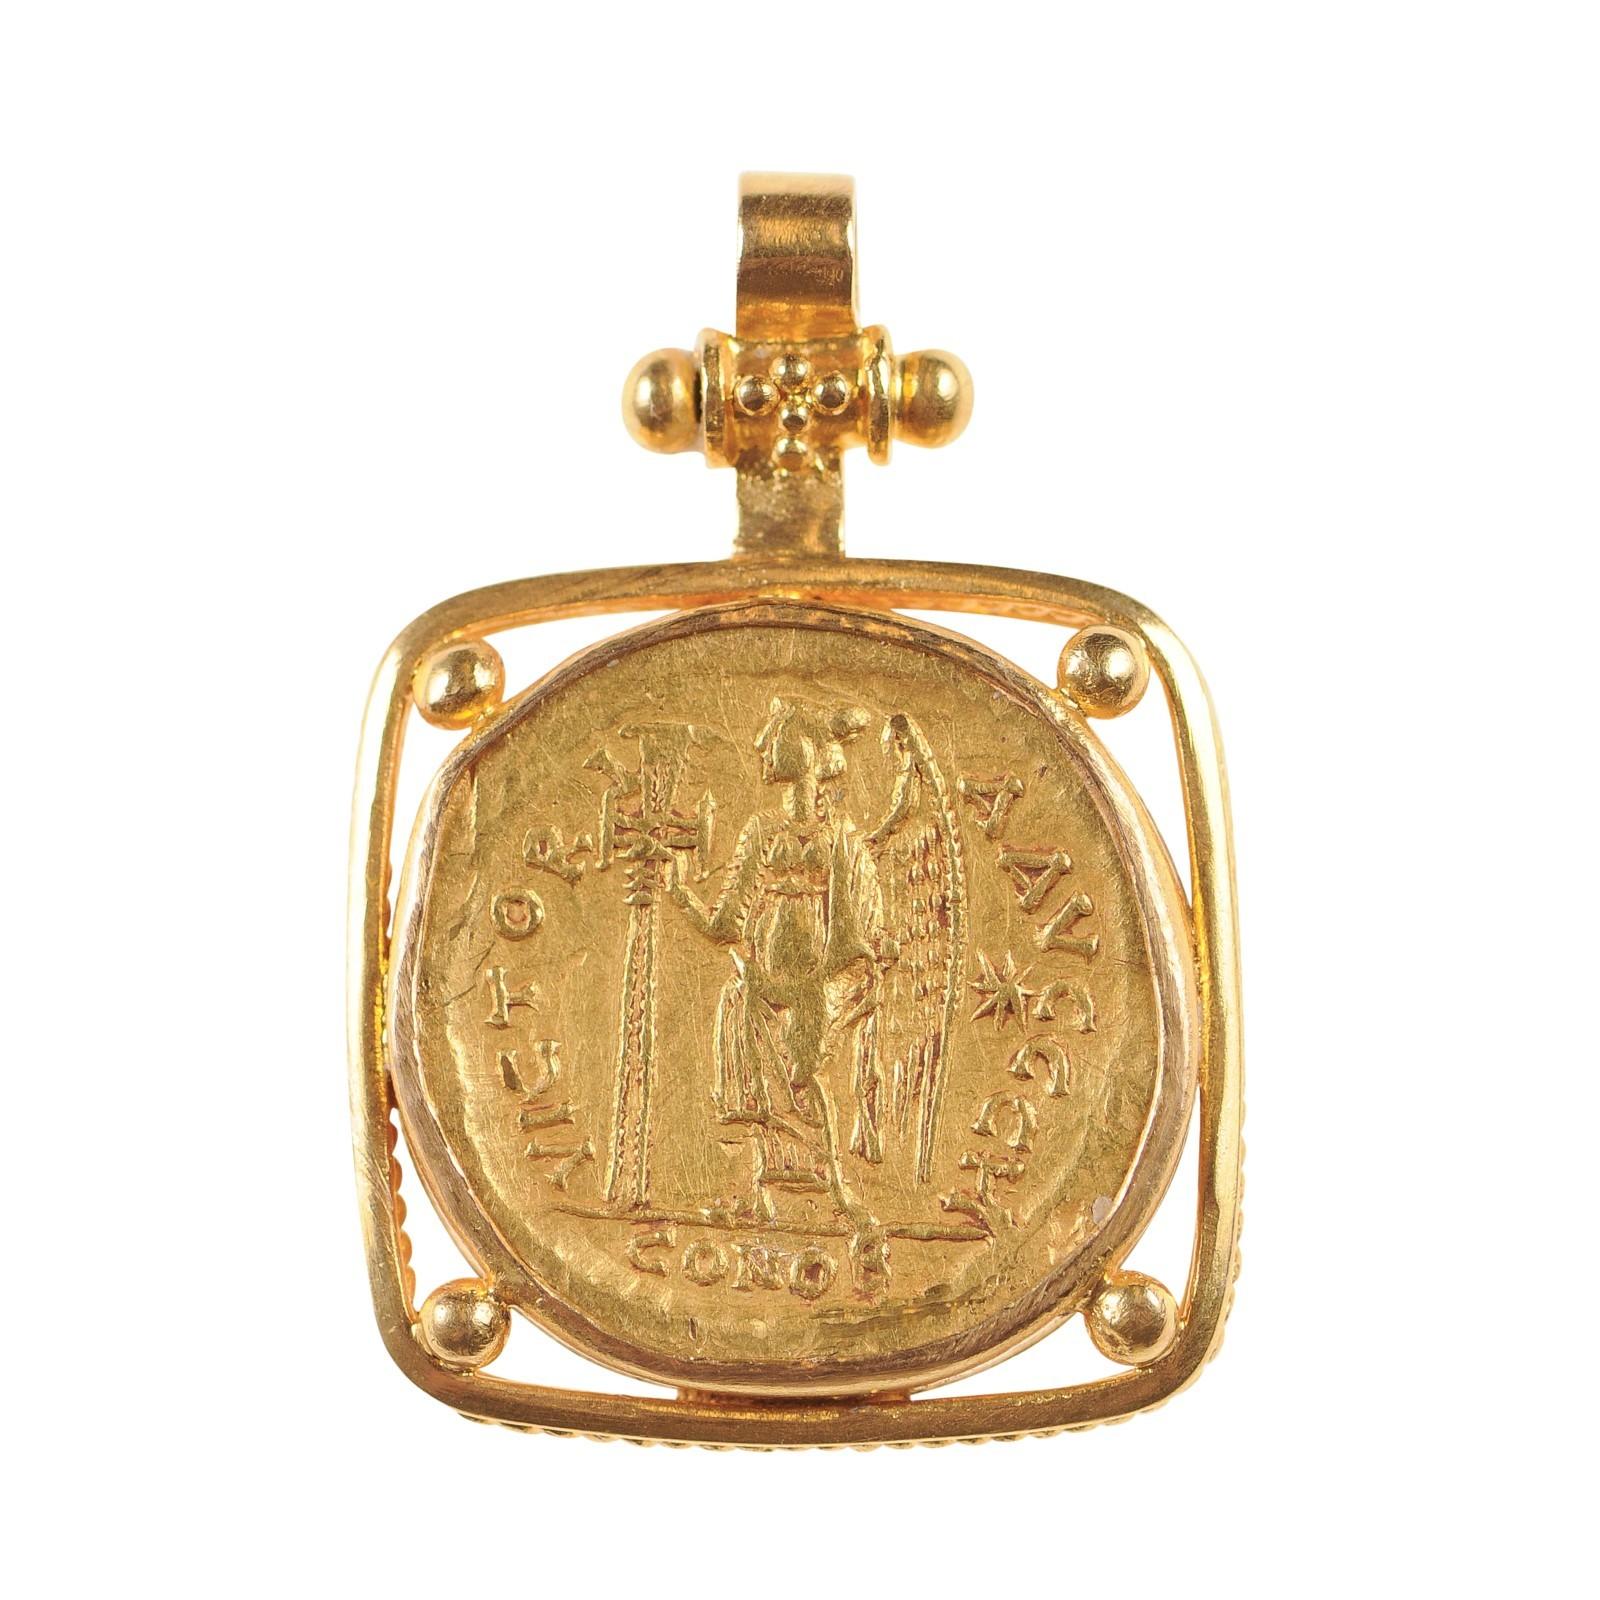 Zeno 2nd Reign AV Gold Solidus Pendant (pendant only) For Sale 5